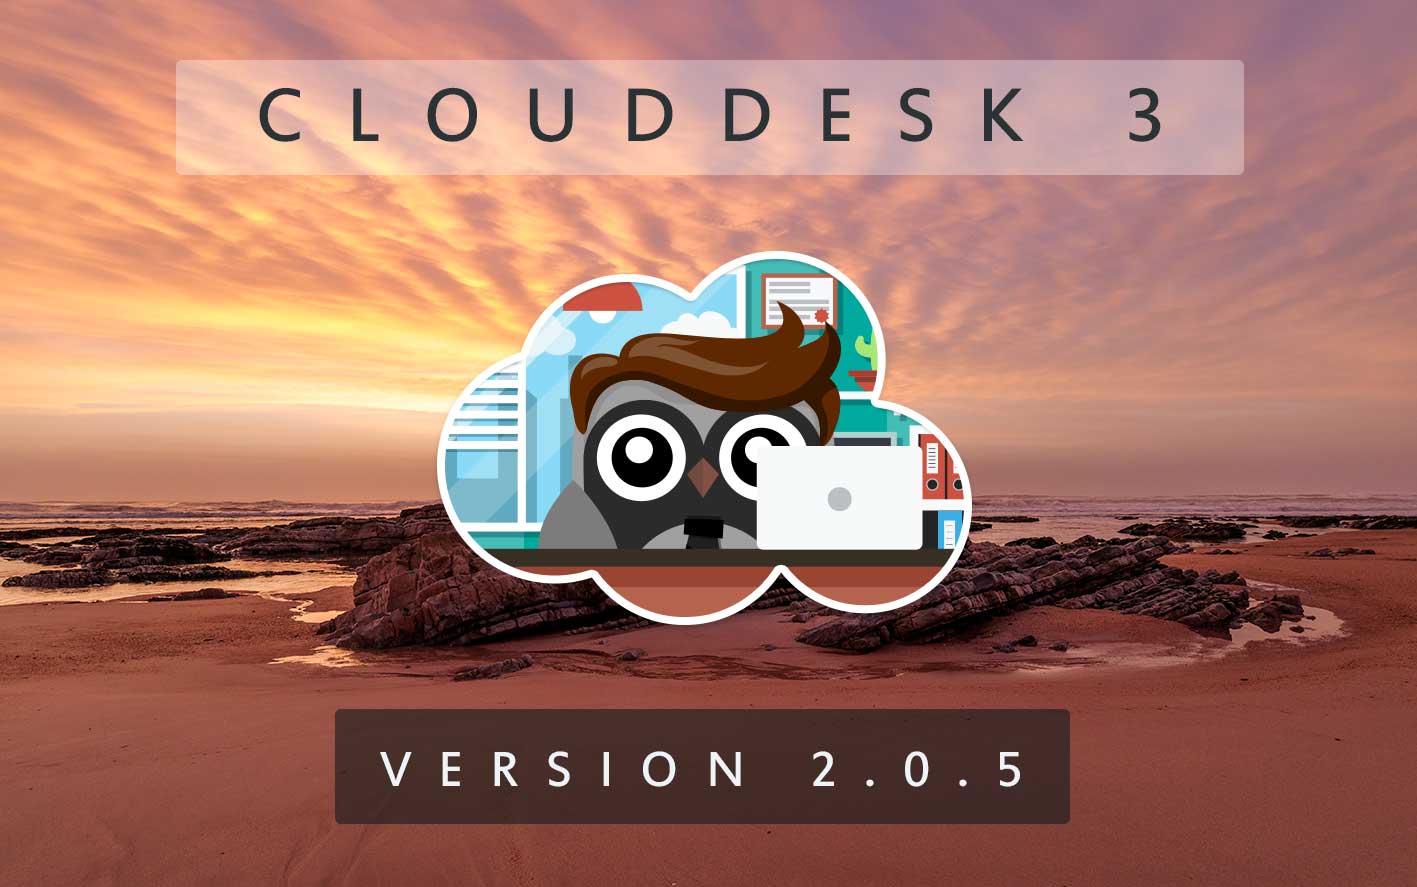 Cloud Desk 3 - Version 2.0.5